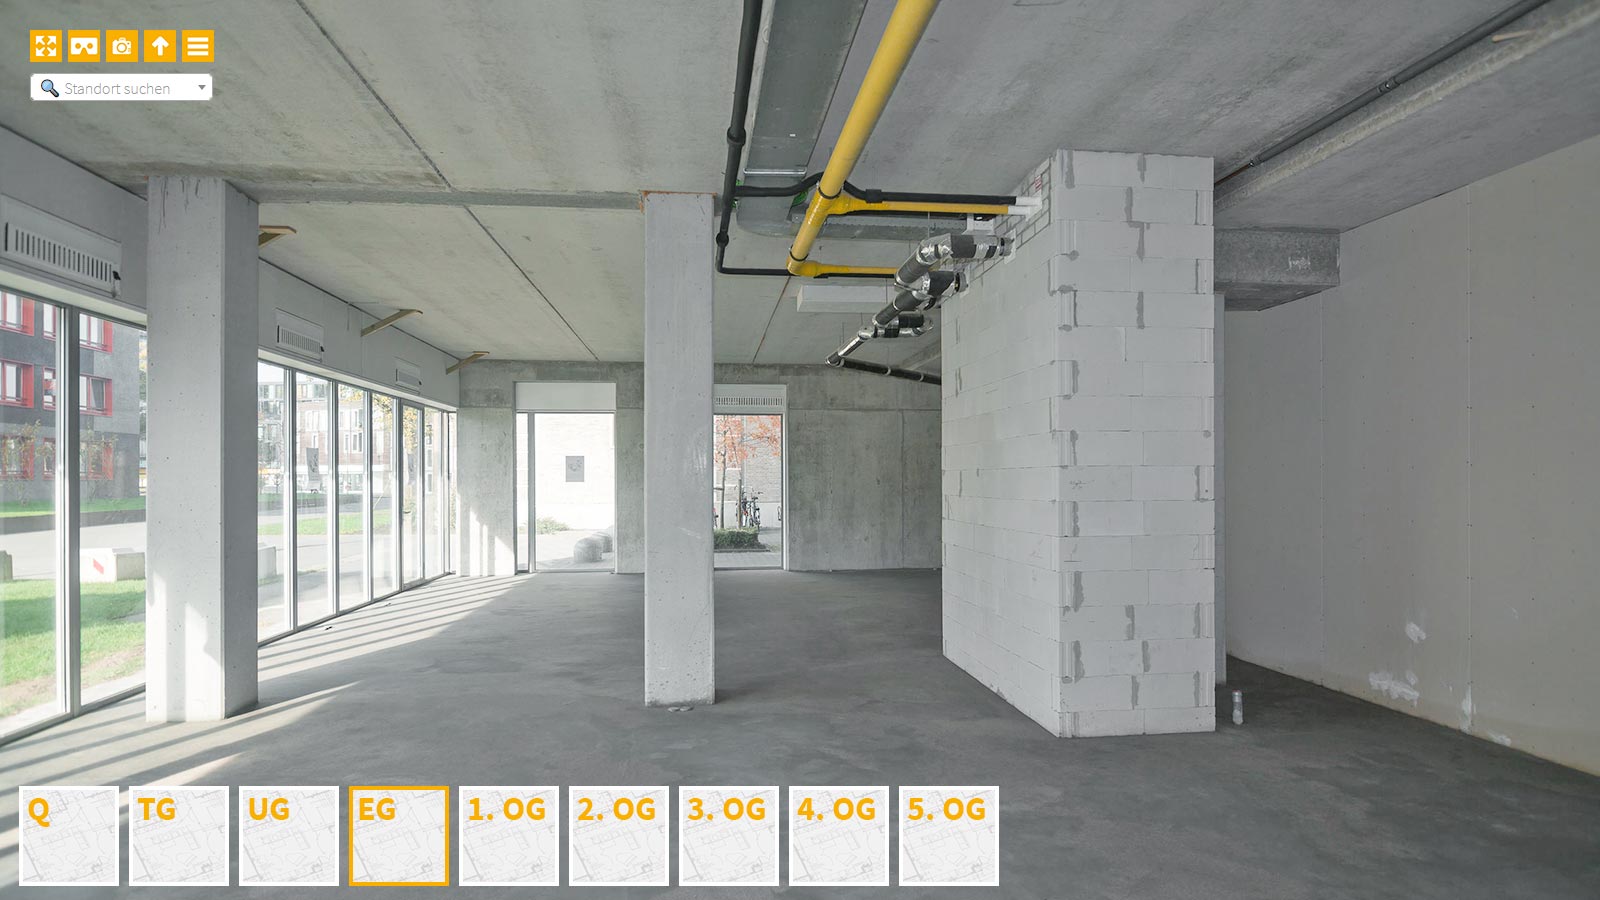 Baudokumentation 360 Grad bei gestörten Projekten in 


	


	


	


	


	


	


	


	


	


	Heilbronn









, Bilddokumentation als virtueller Rundgang